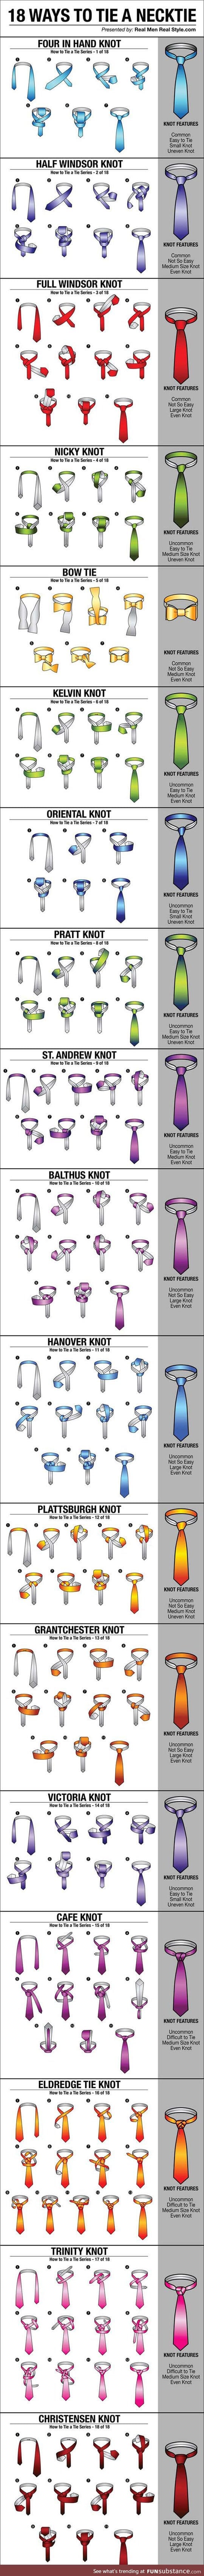 Ways to tie a necktie